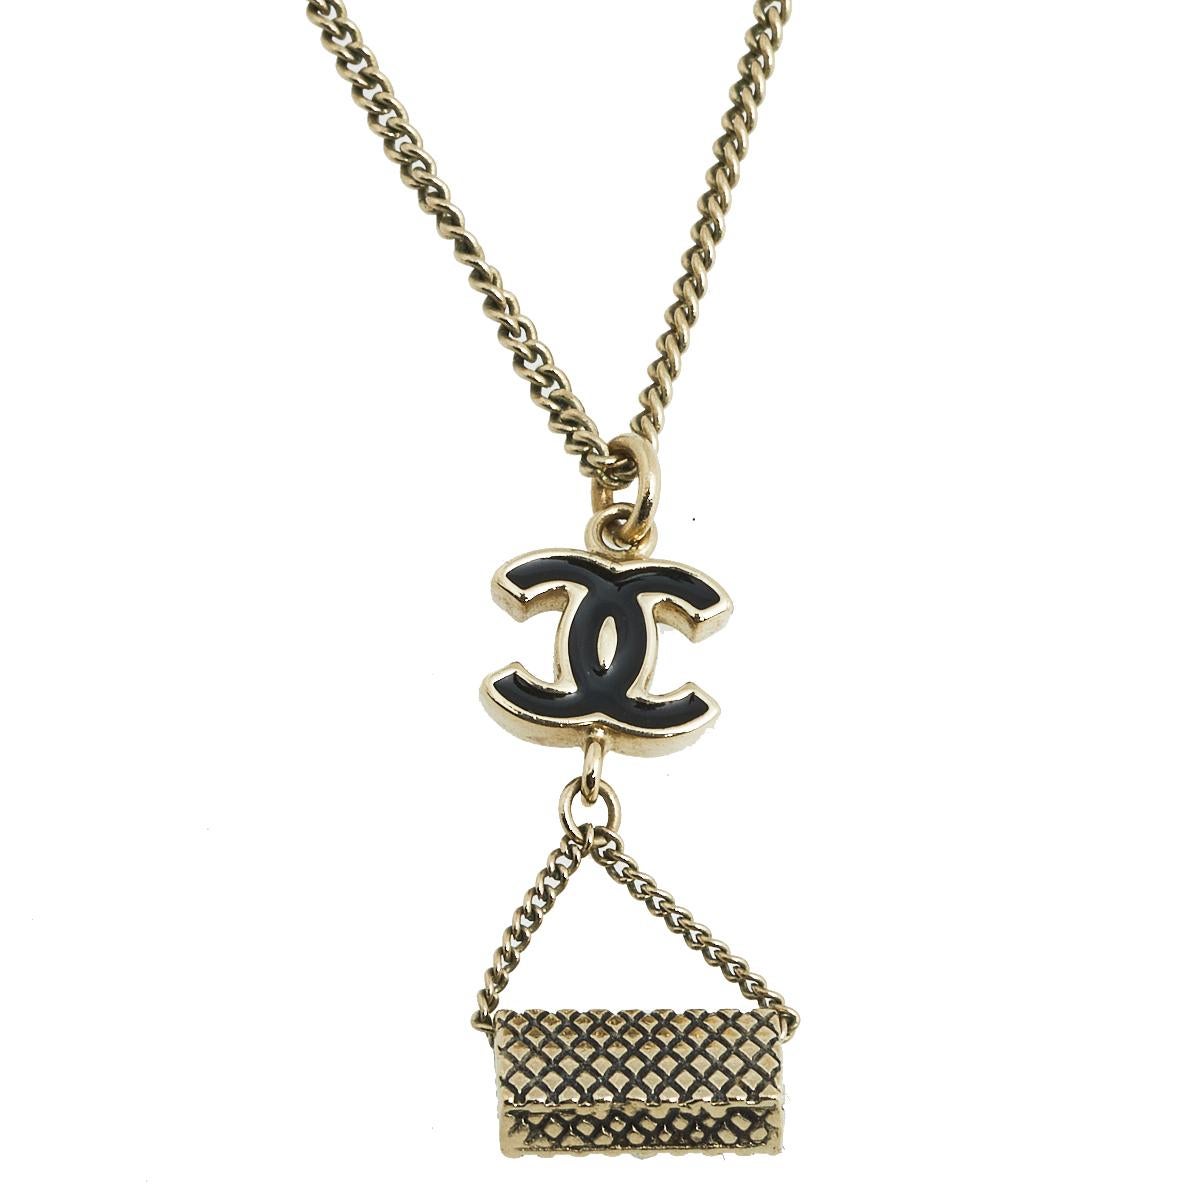 Contemporary Chanel CC Black Enamel Gold Tone Flap Bag Charm Pendant Necklace